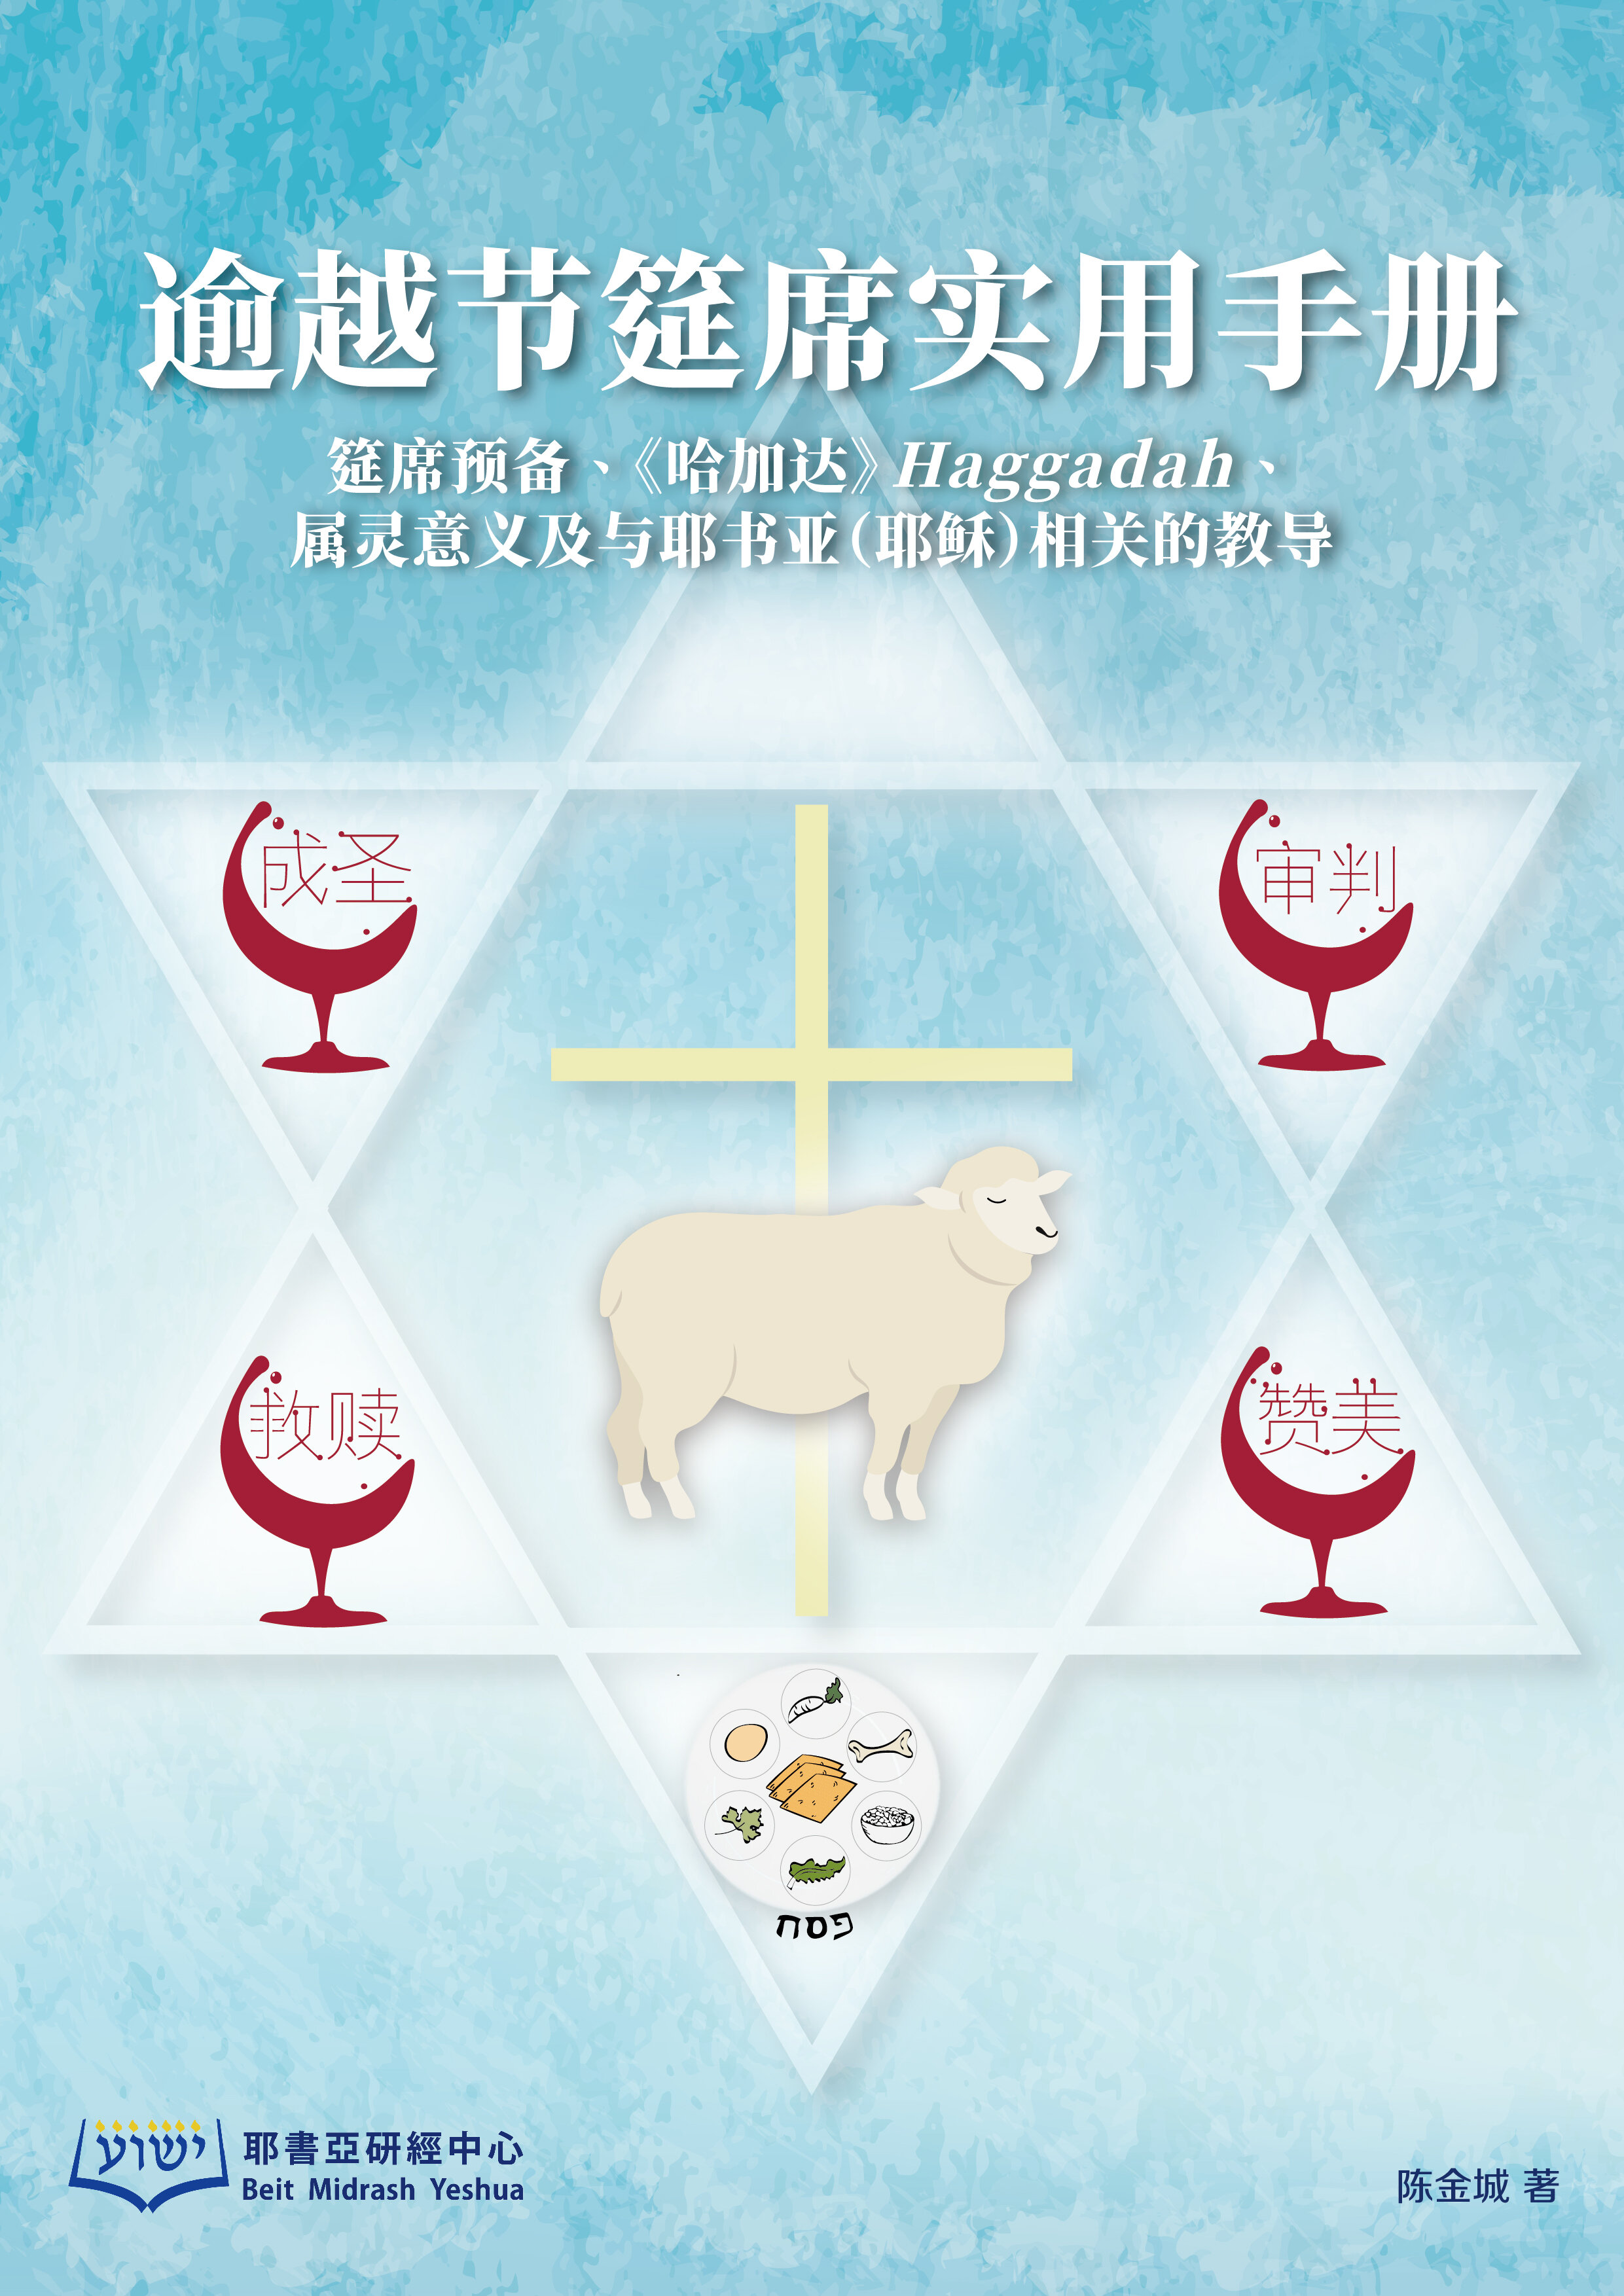 逾越节筵席实用手册(简体) Practical Manual for Passover Feast (Simplified Chinese)